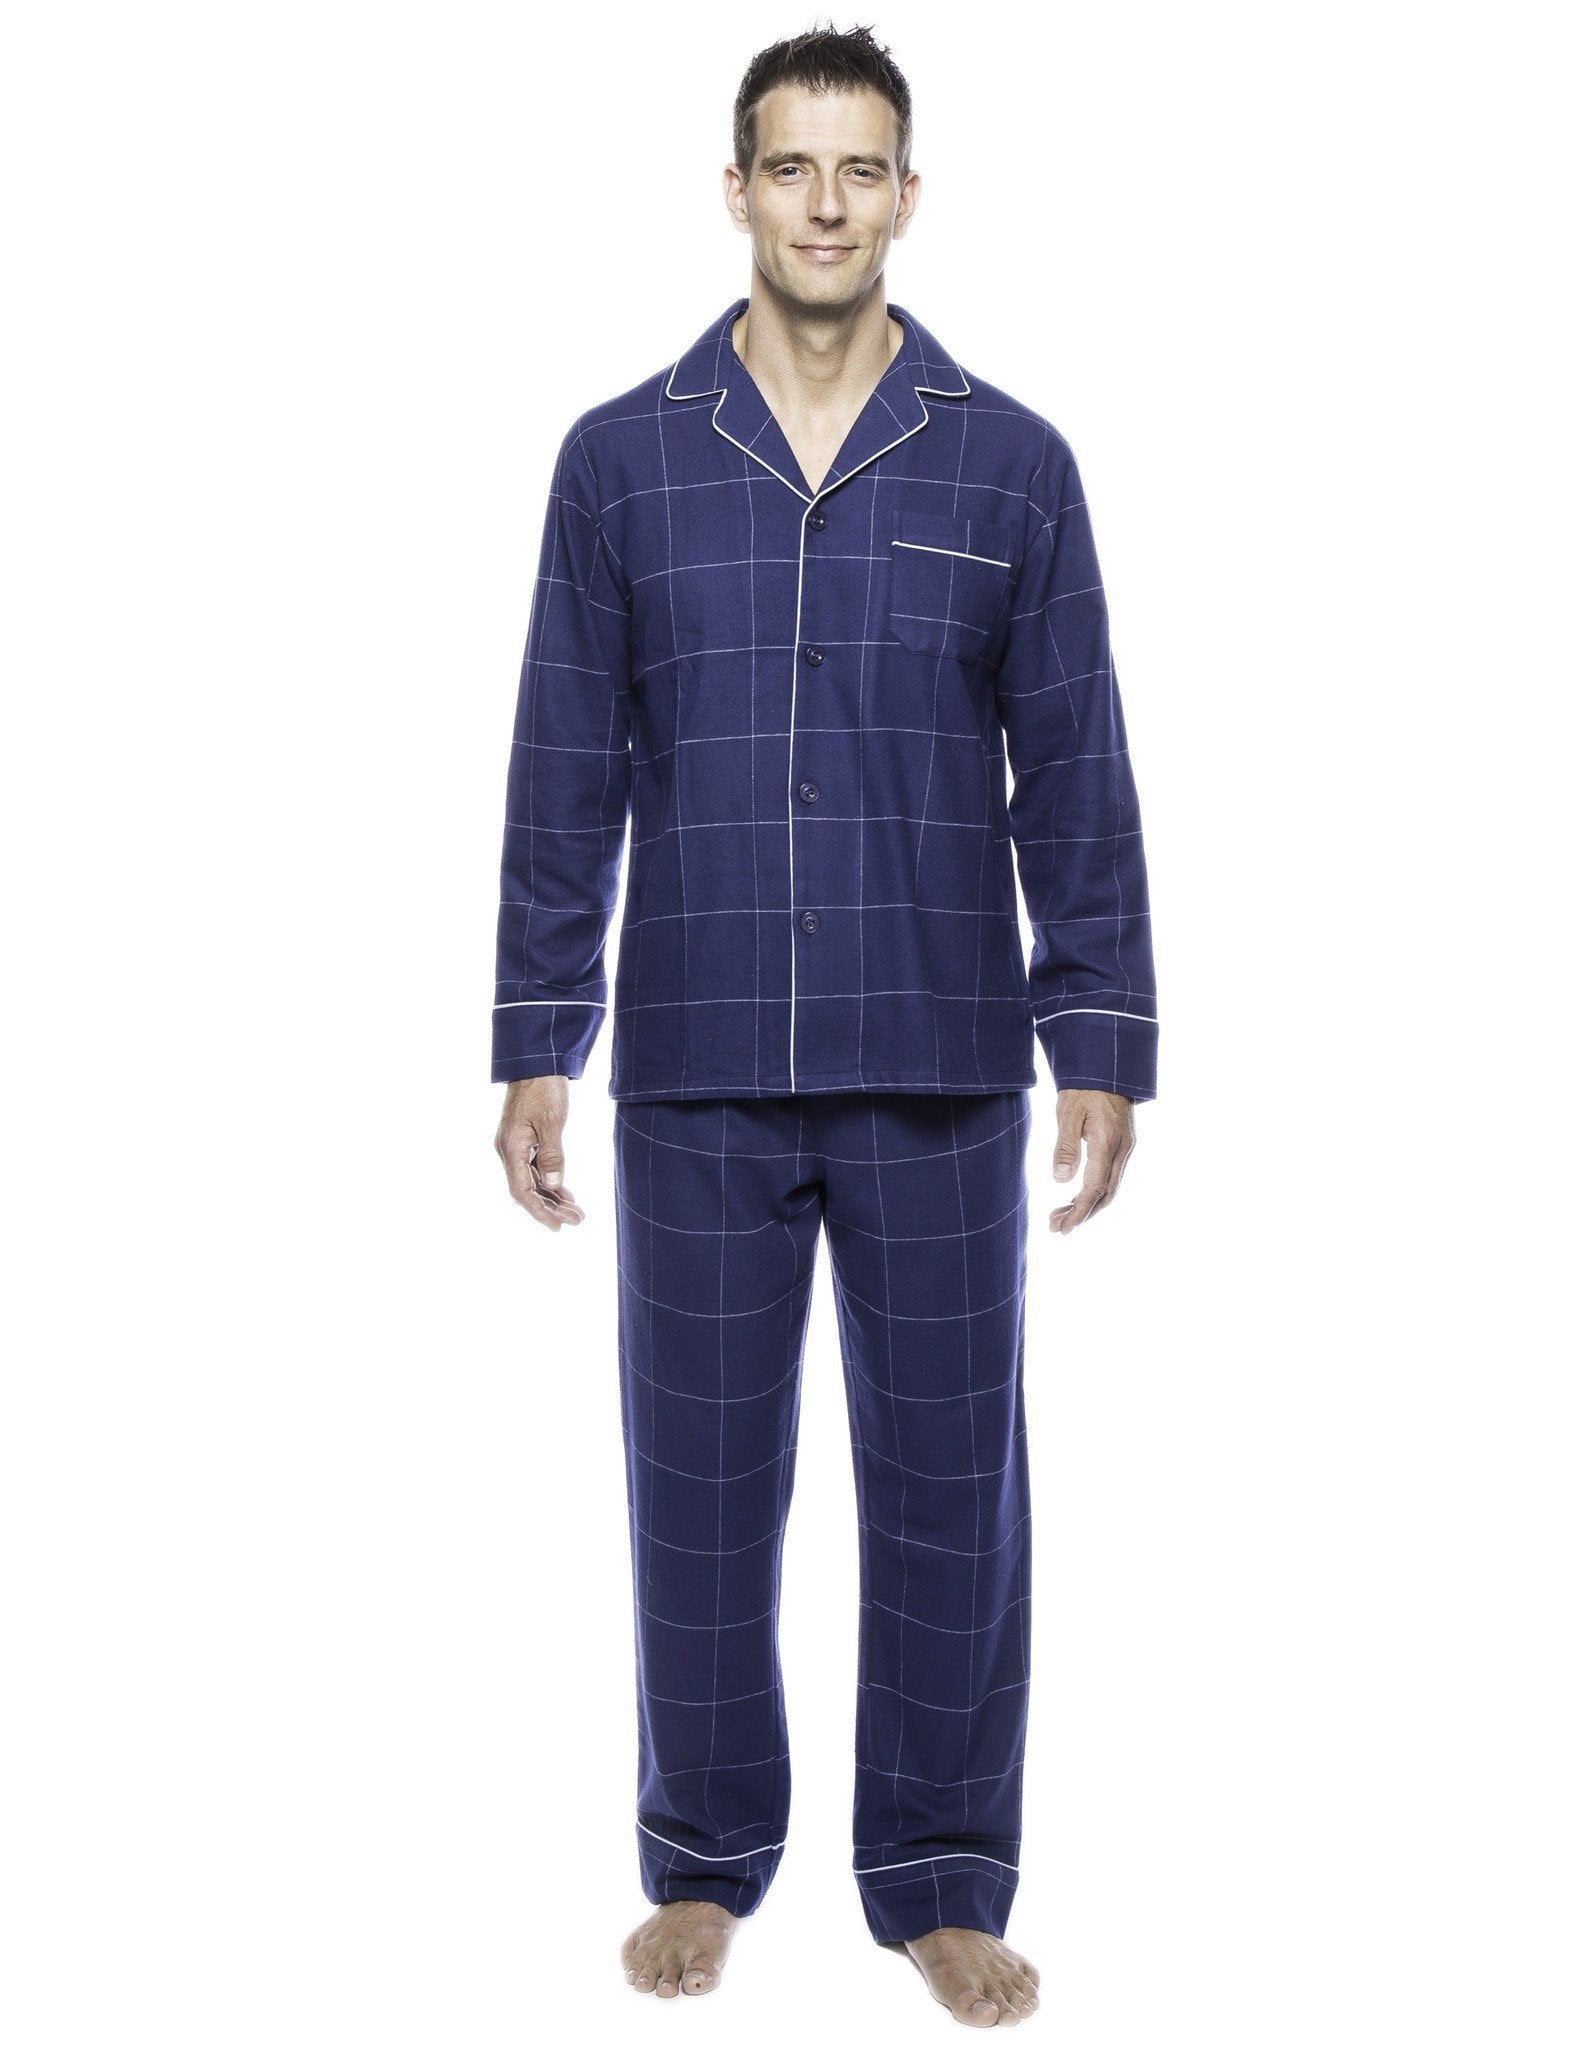 Men's Premium 100% Cotton Flannel Pajama Sleepwear Set - Windowpane Checks Dark Blue